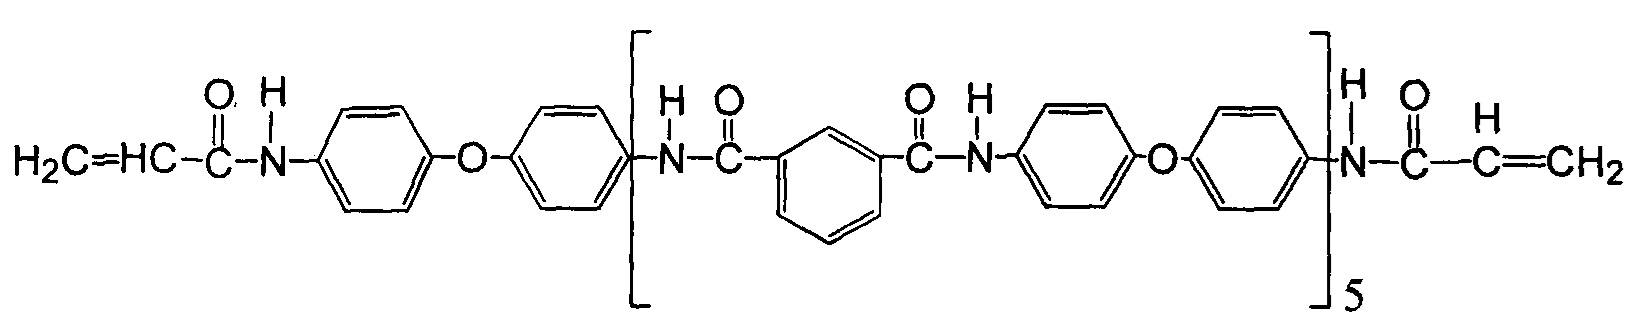 Фенилоксид. Нота phenyl Oxide фото.